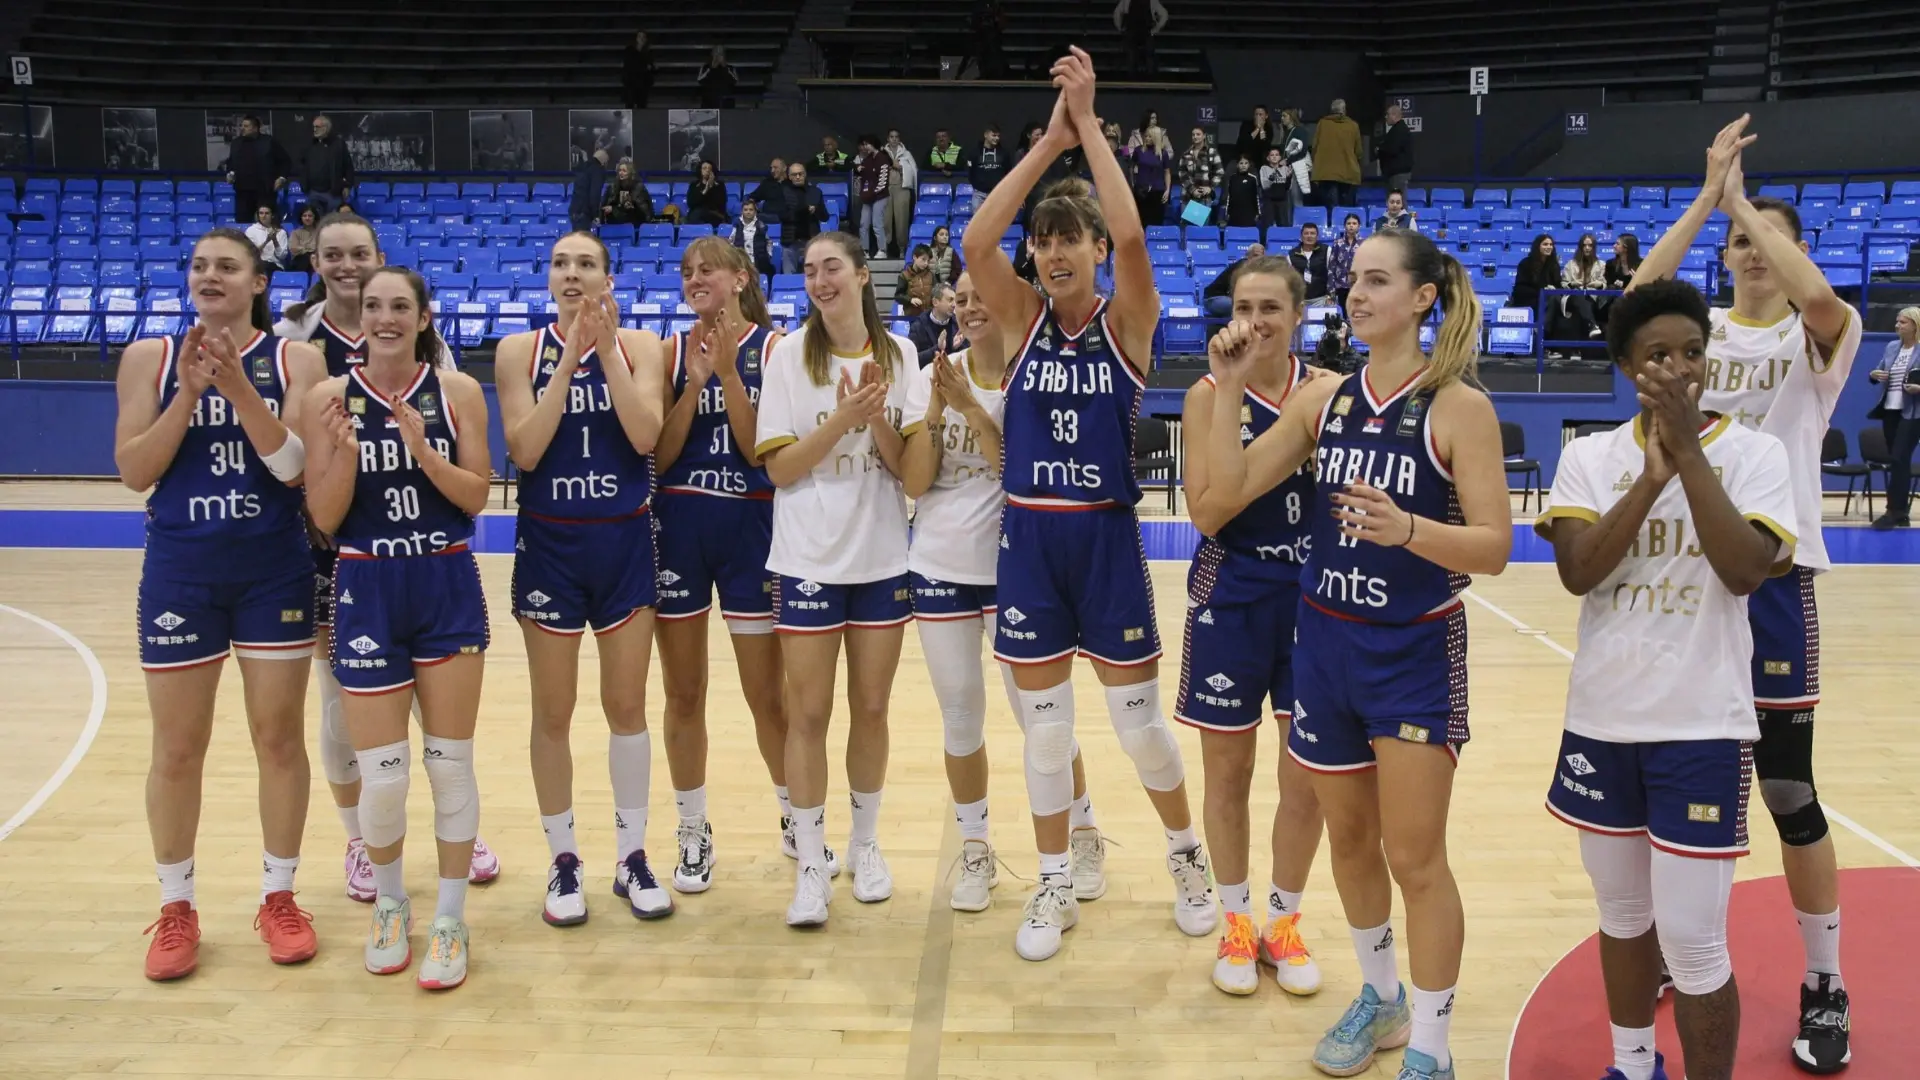 ženska košarkaška reprezentacija srbije kss-654d39ab38d11.webp